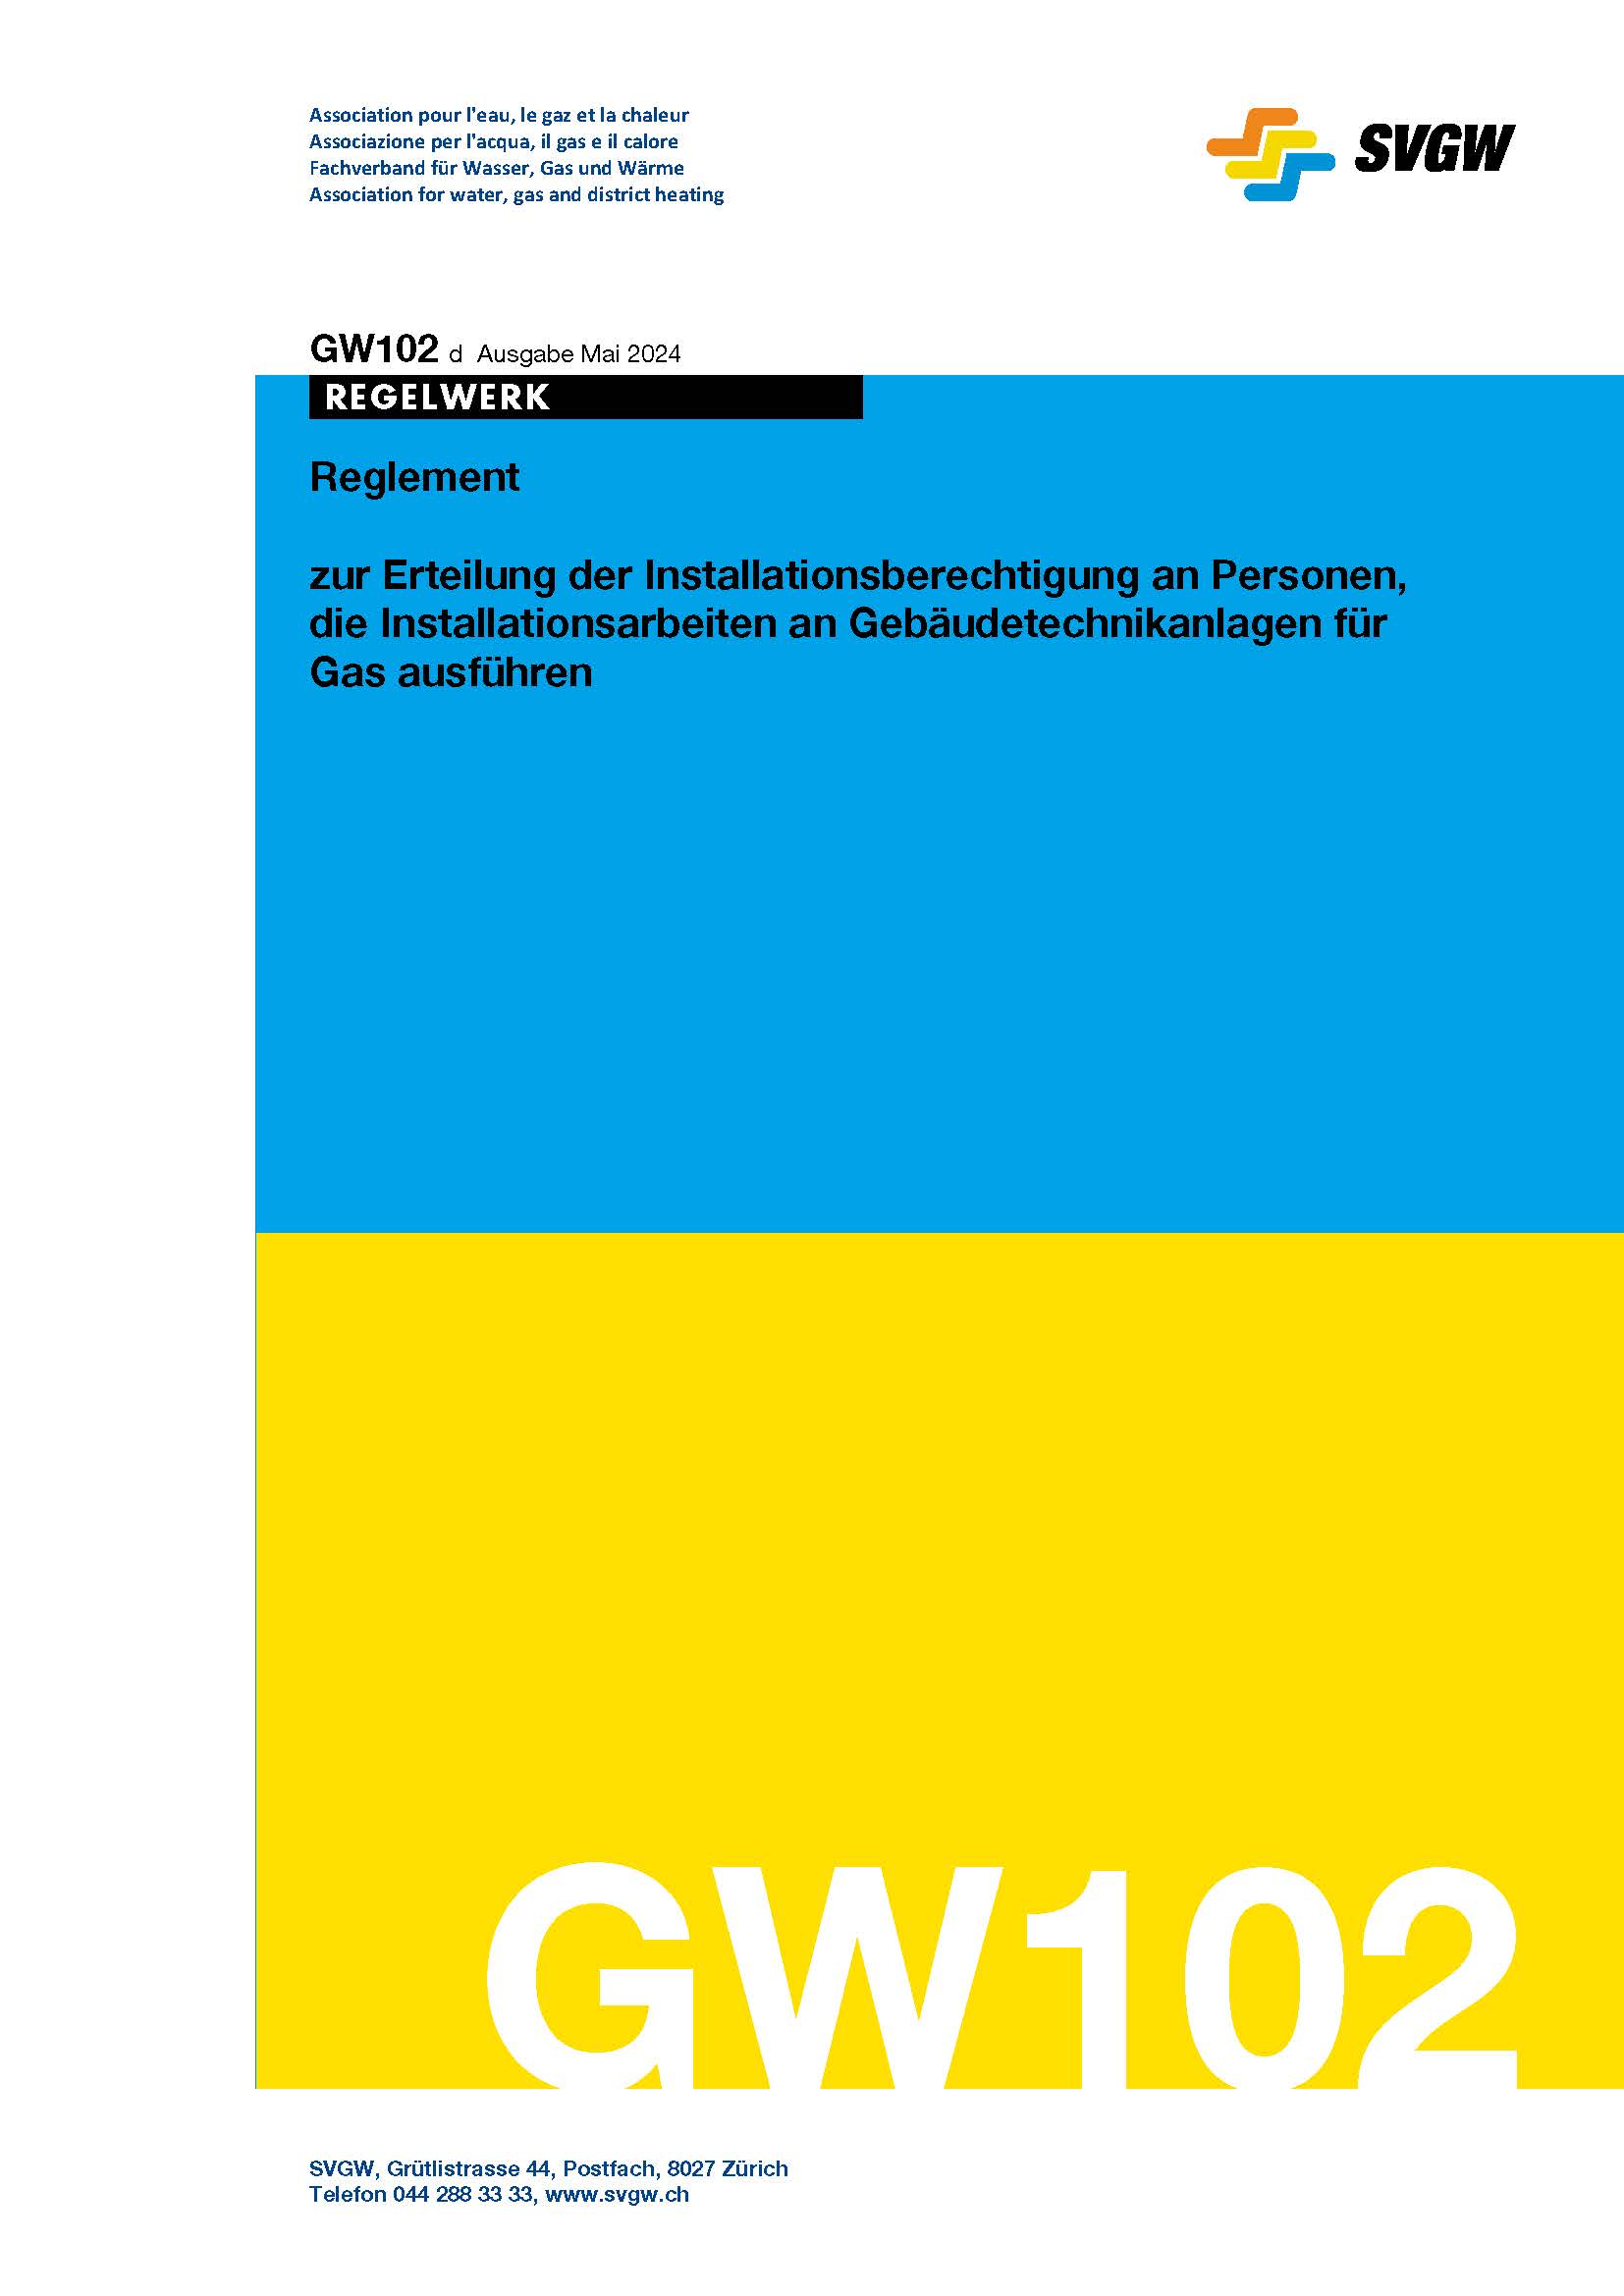 GW102 d Reglement zur Erteilung der Installationsberechtigung an Personen, die Installationsarbeiten an Gebäudetechnikanlagen für Gas ausführen